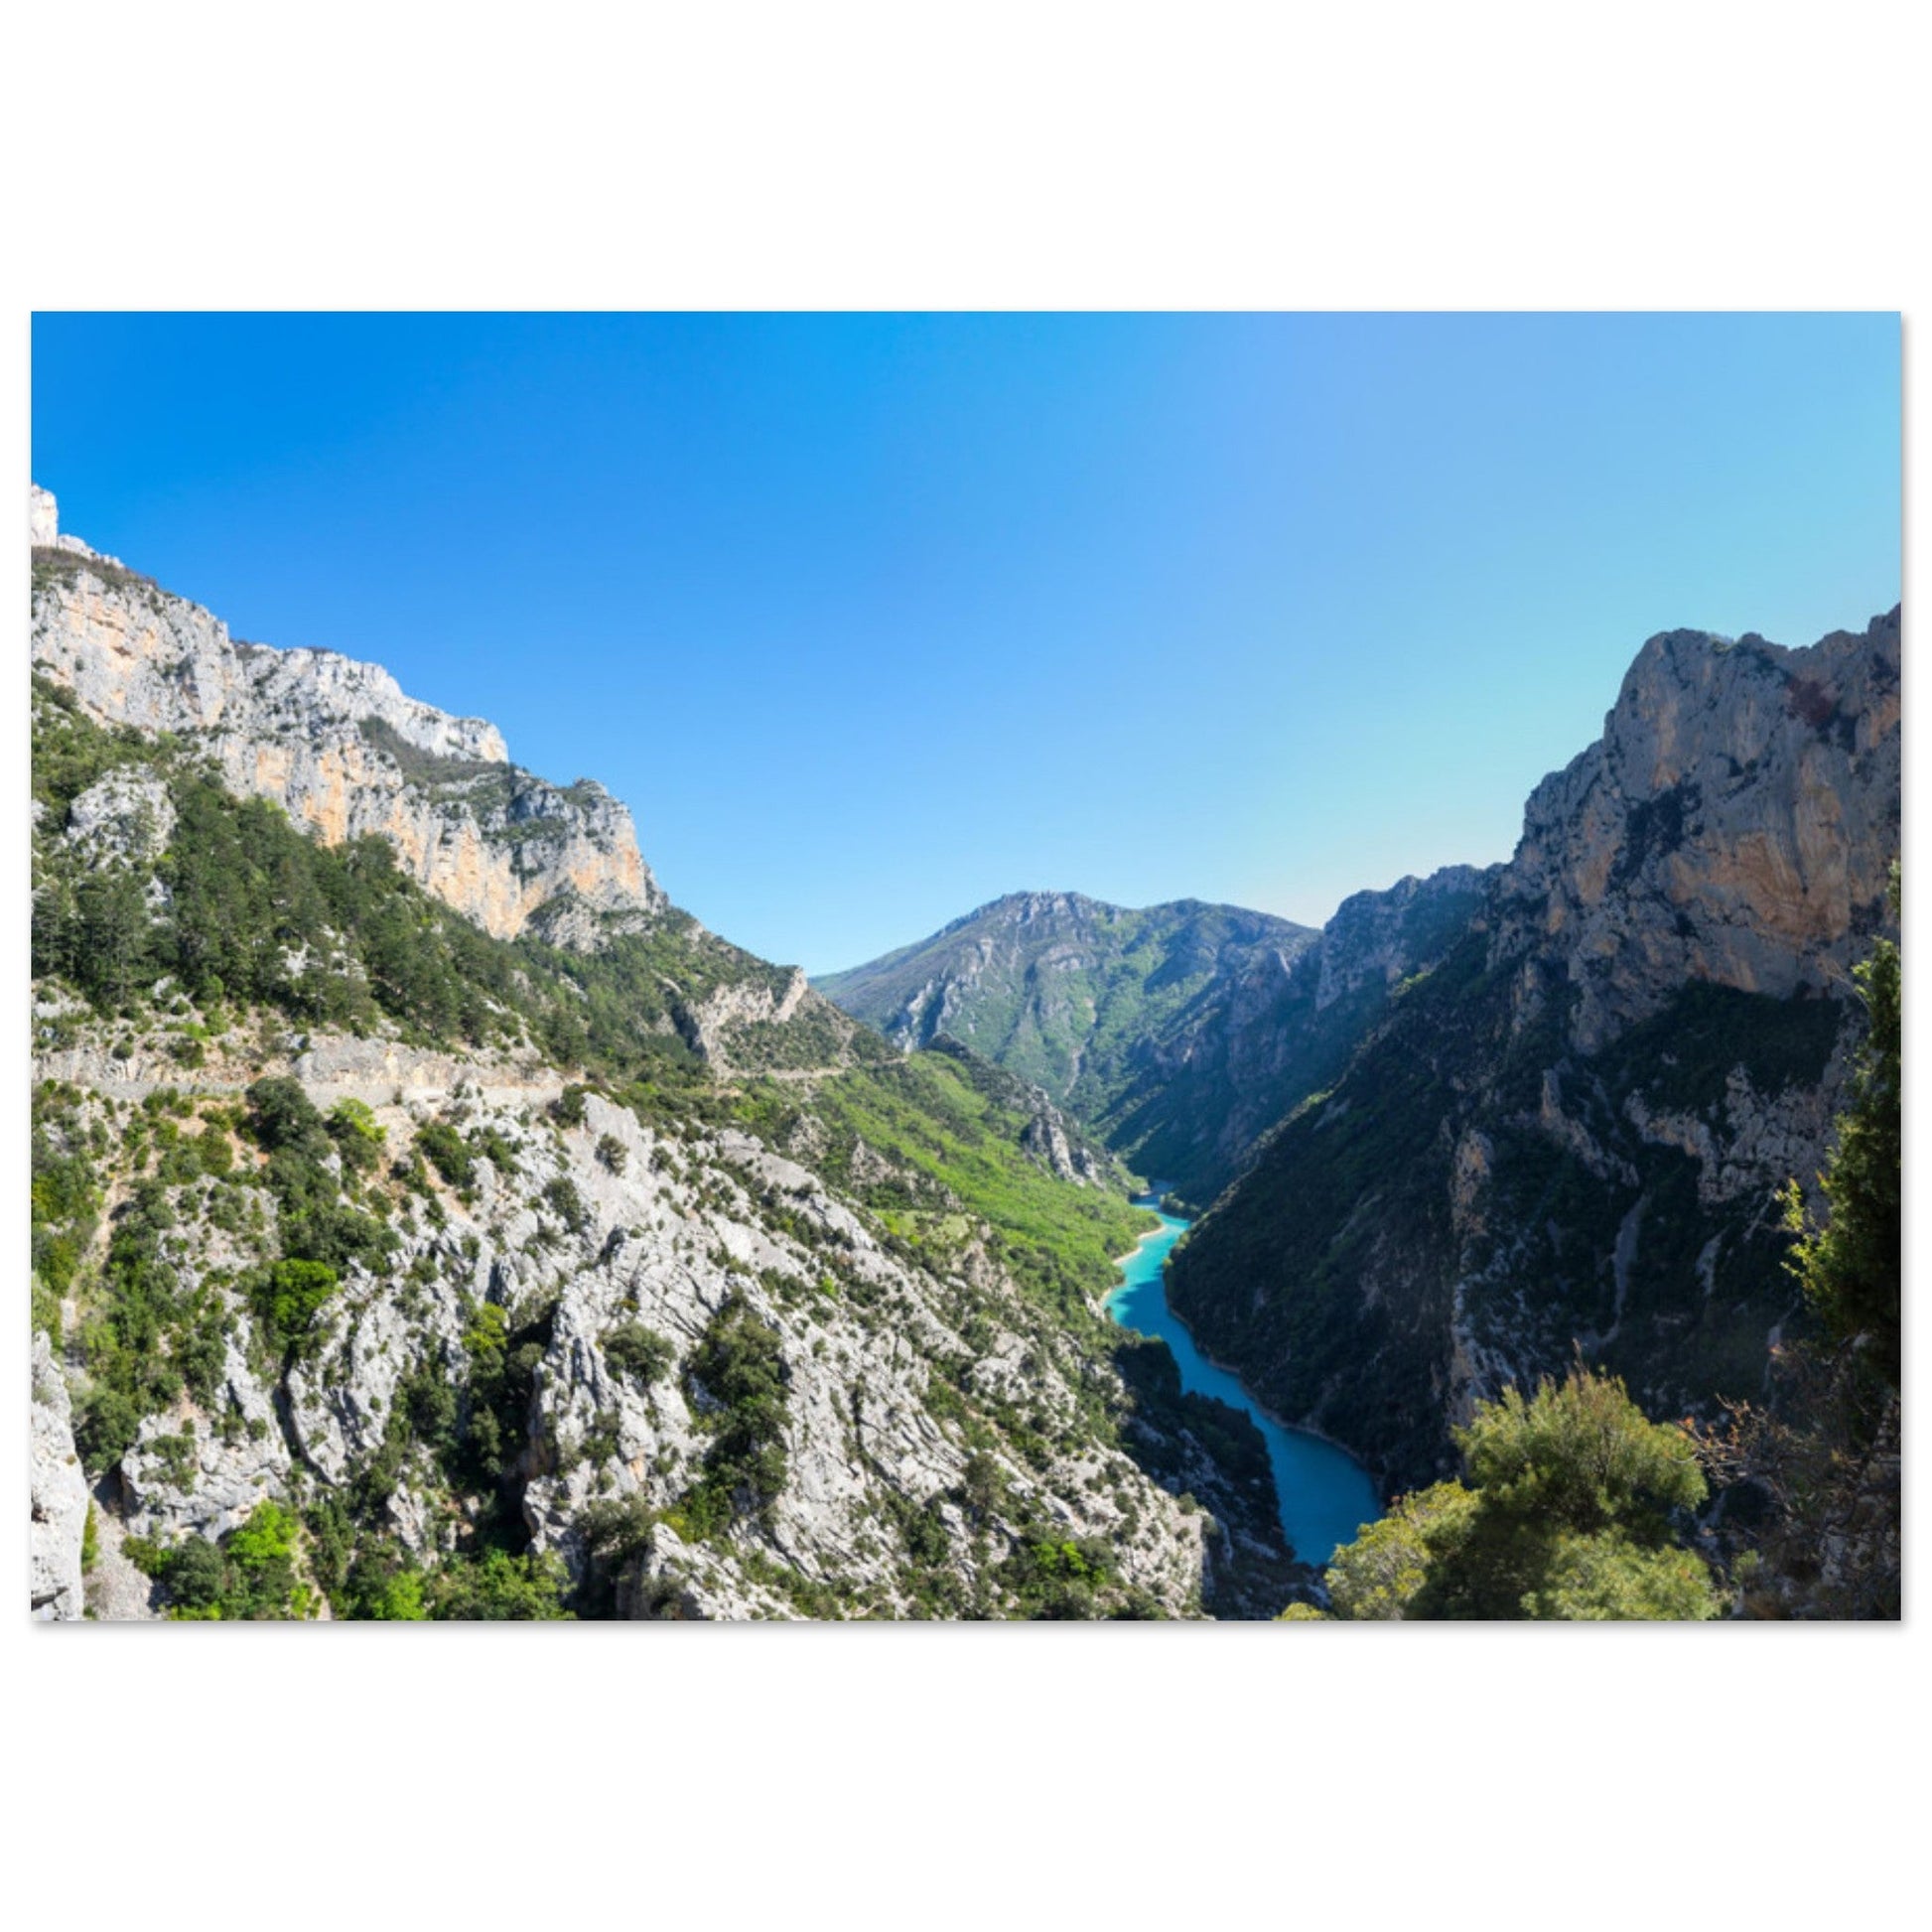 Vente Photo des Gorges du Verdon, Provence #2 - Tableau photo paysage